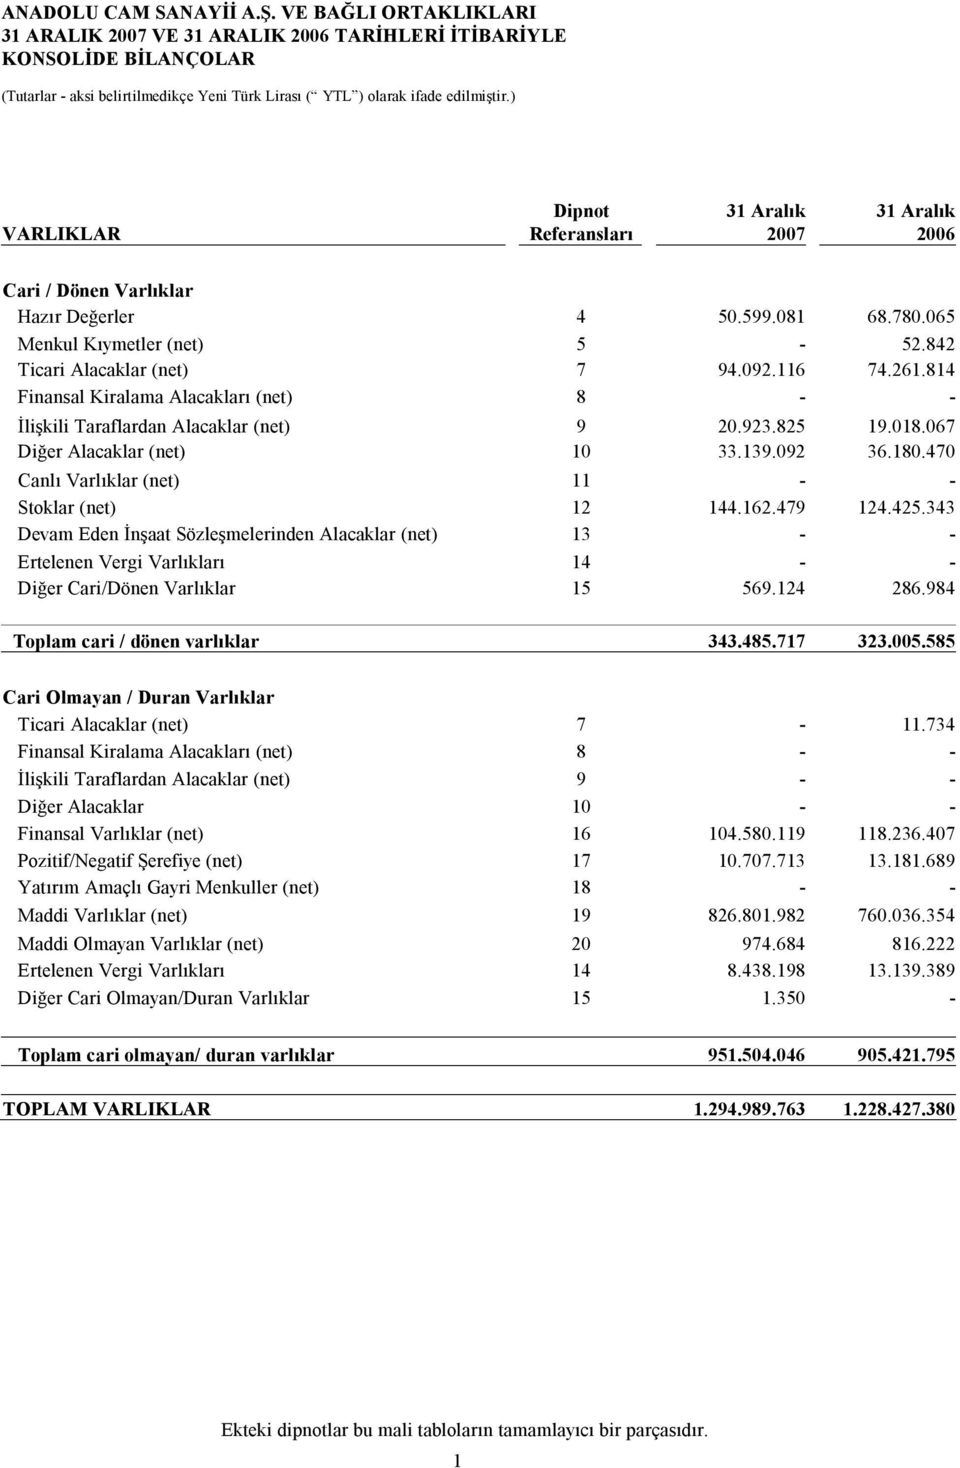 814 Finansal Kiralama Alacakları (net) 8 - - İlişkili Taraflardan Alacaklar (net) 9 20.923.825 19.018.067 Diğer Alacaklar (net) 10 33.139.092 36.180.